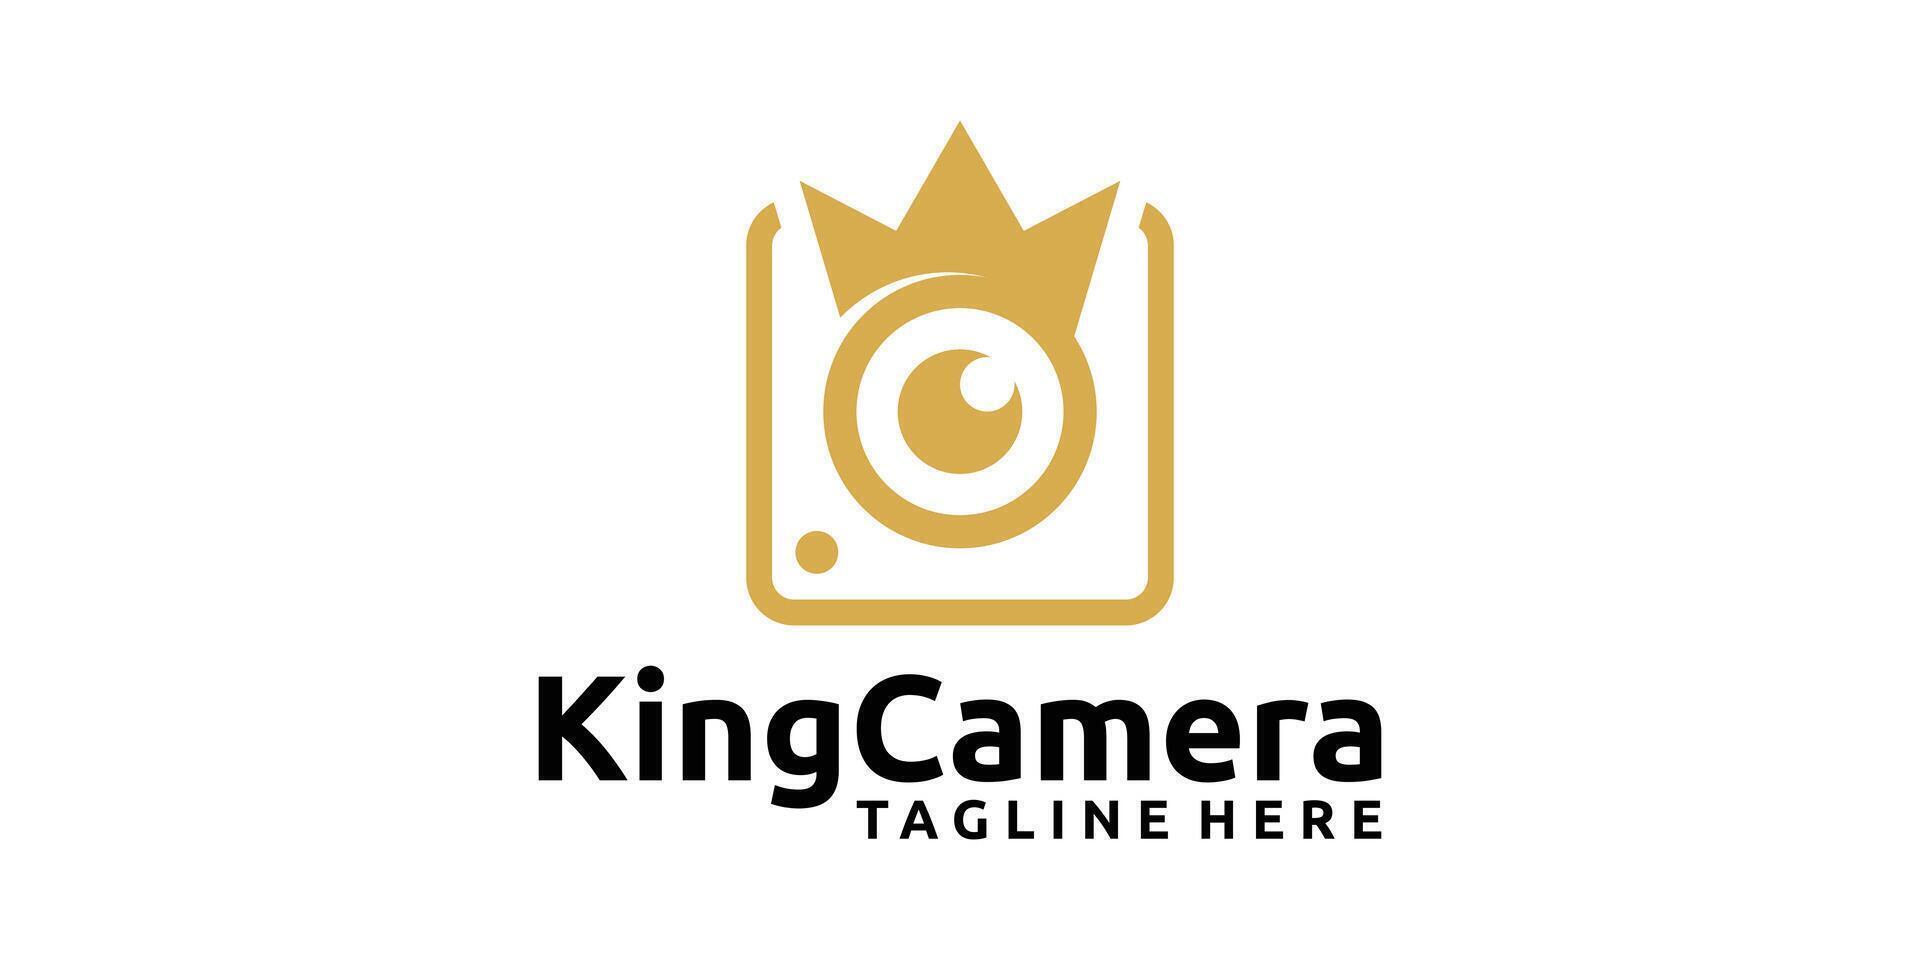 creative king camera logo design, crown and camera logo design, logo design templates, symbols, icons, creative ideas. vector